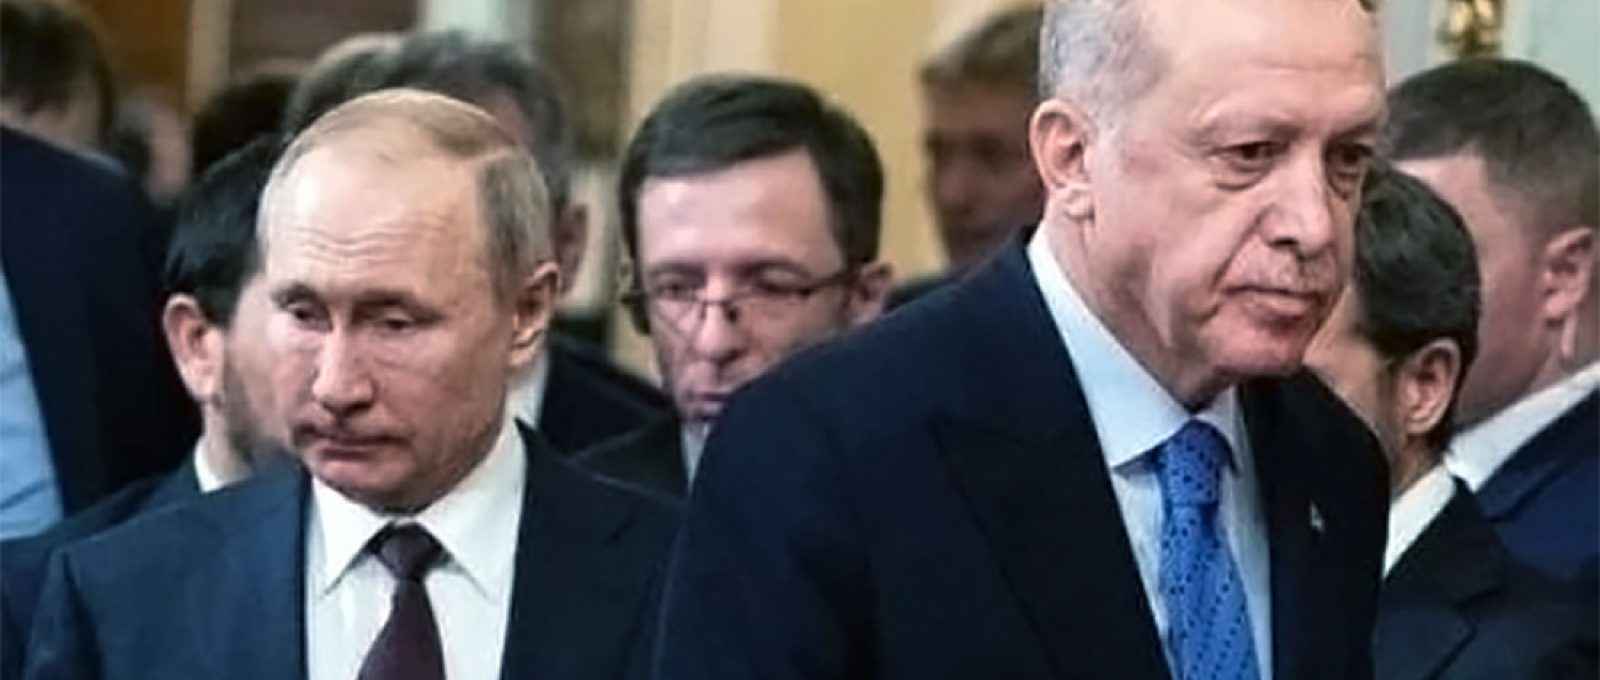 Os presidentes da Rússia, Vladimir Putin, e da Turquia, Tayyip Erdogan, chegam para uma coletiva de imprensa após suas conversas em Moscou, Rússia, em 5 de março de 2020 (Pavel Golovkin/Reuters).